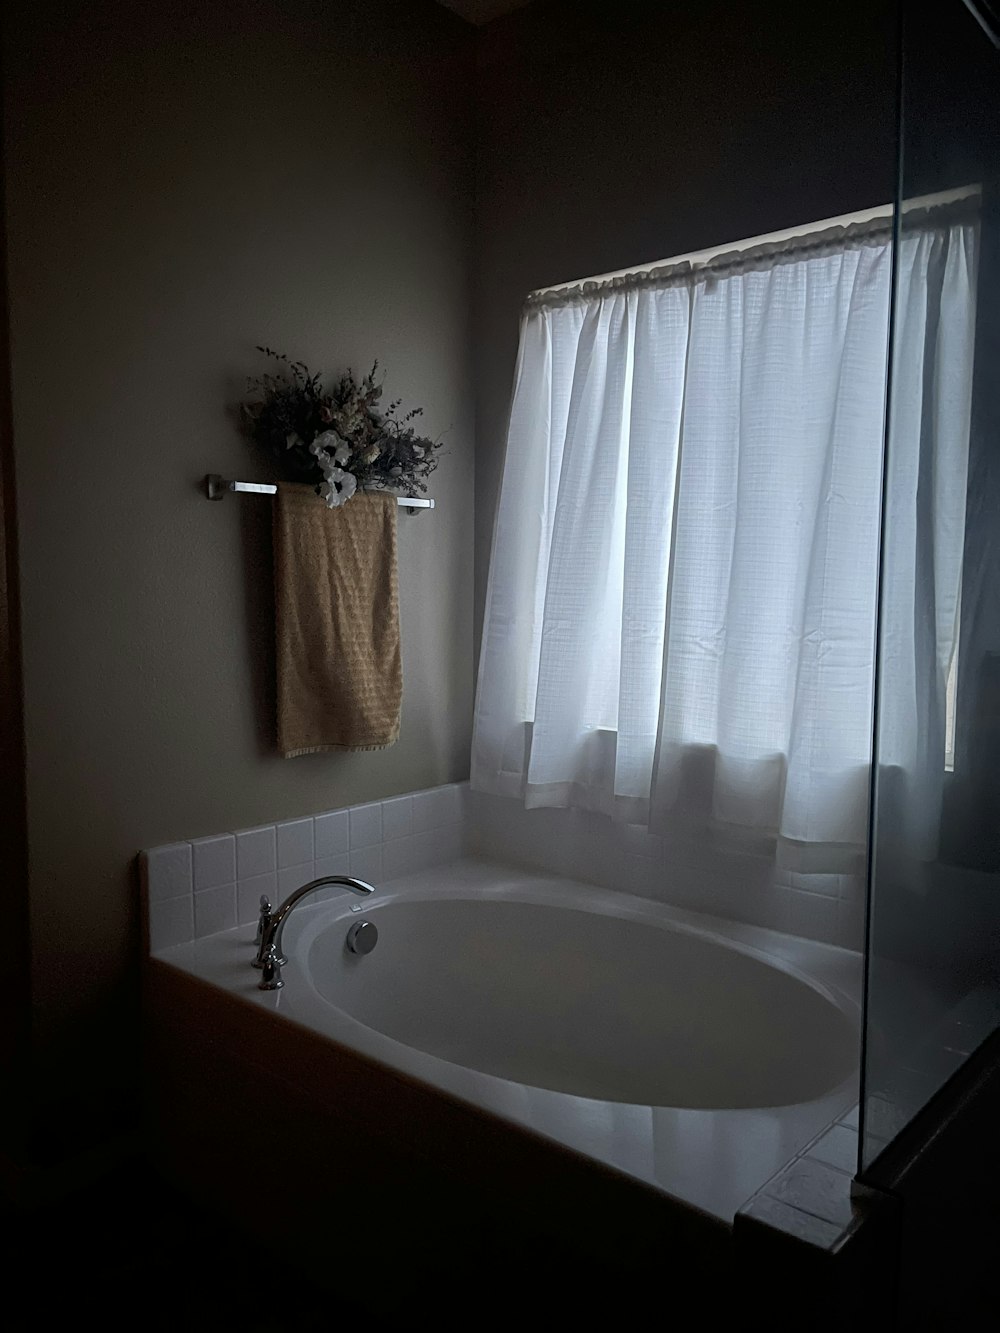 a bath tub sitting under a window next to a towel rack